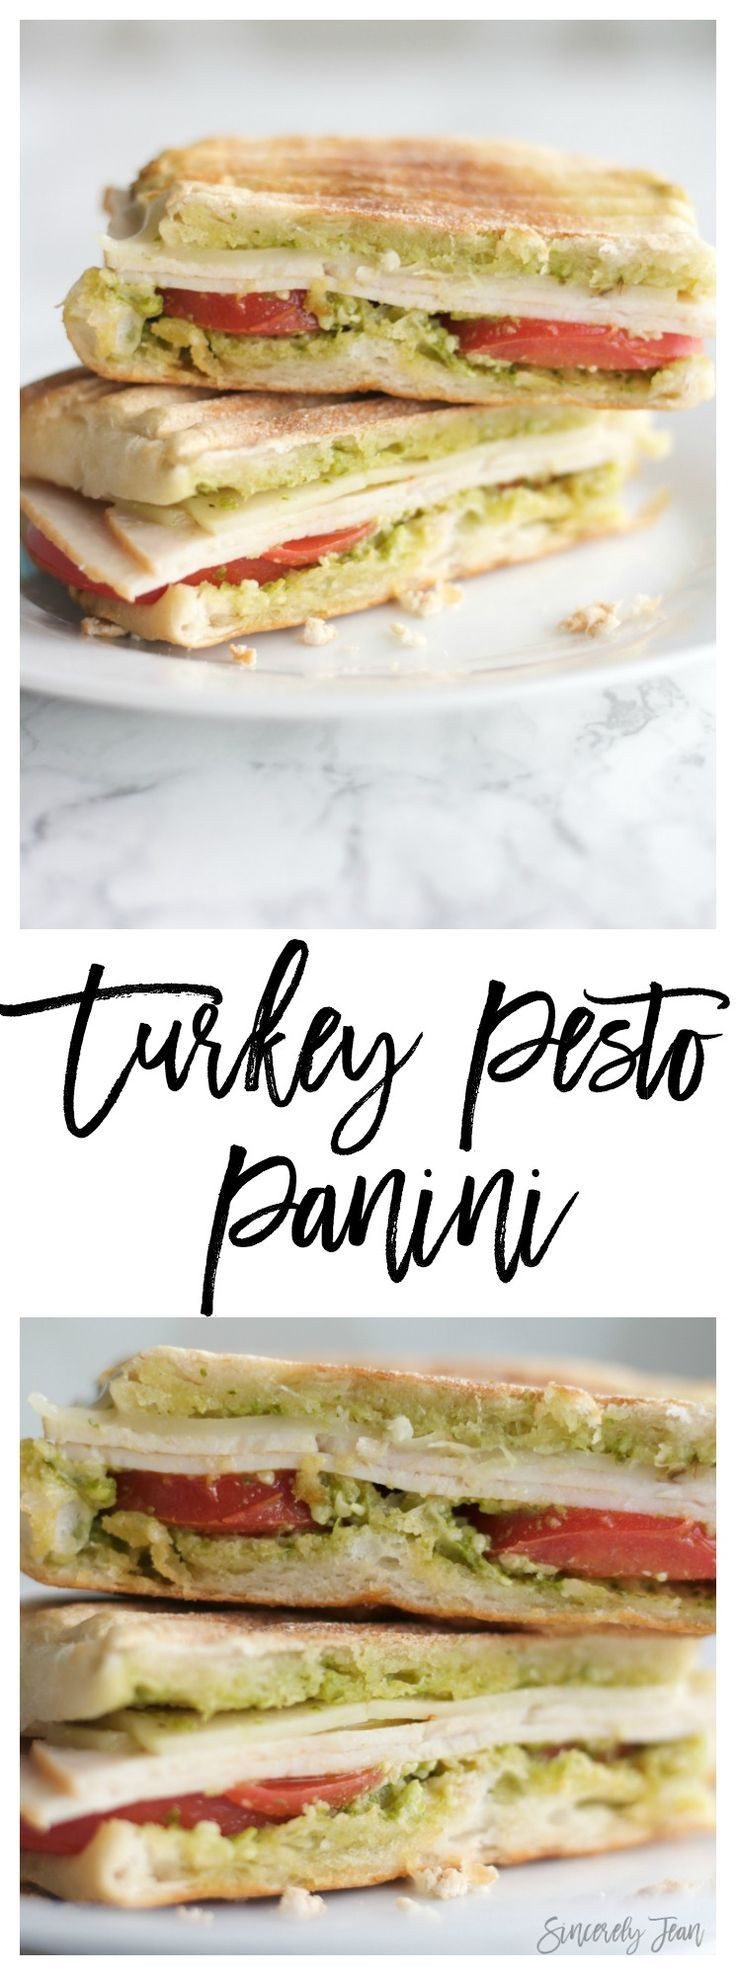 Turkey Pesto Panini Recipe
 Turkey Pesto Panini